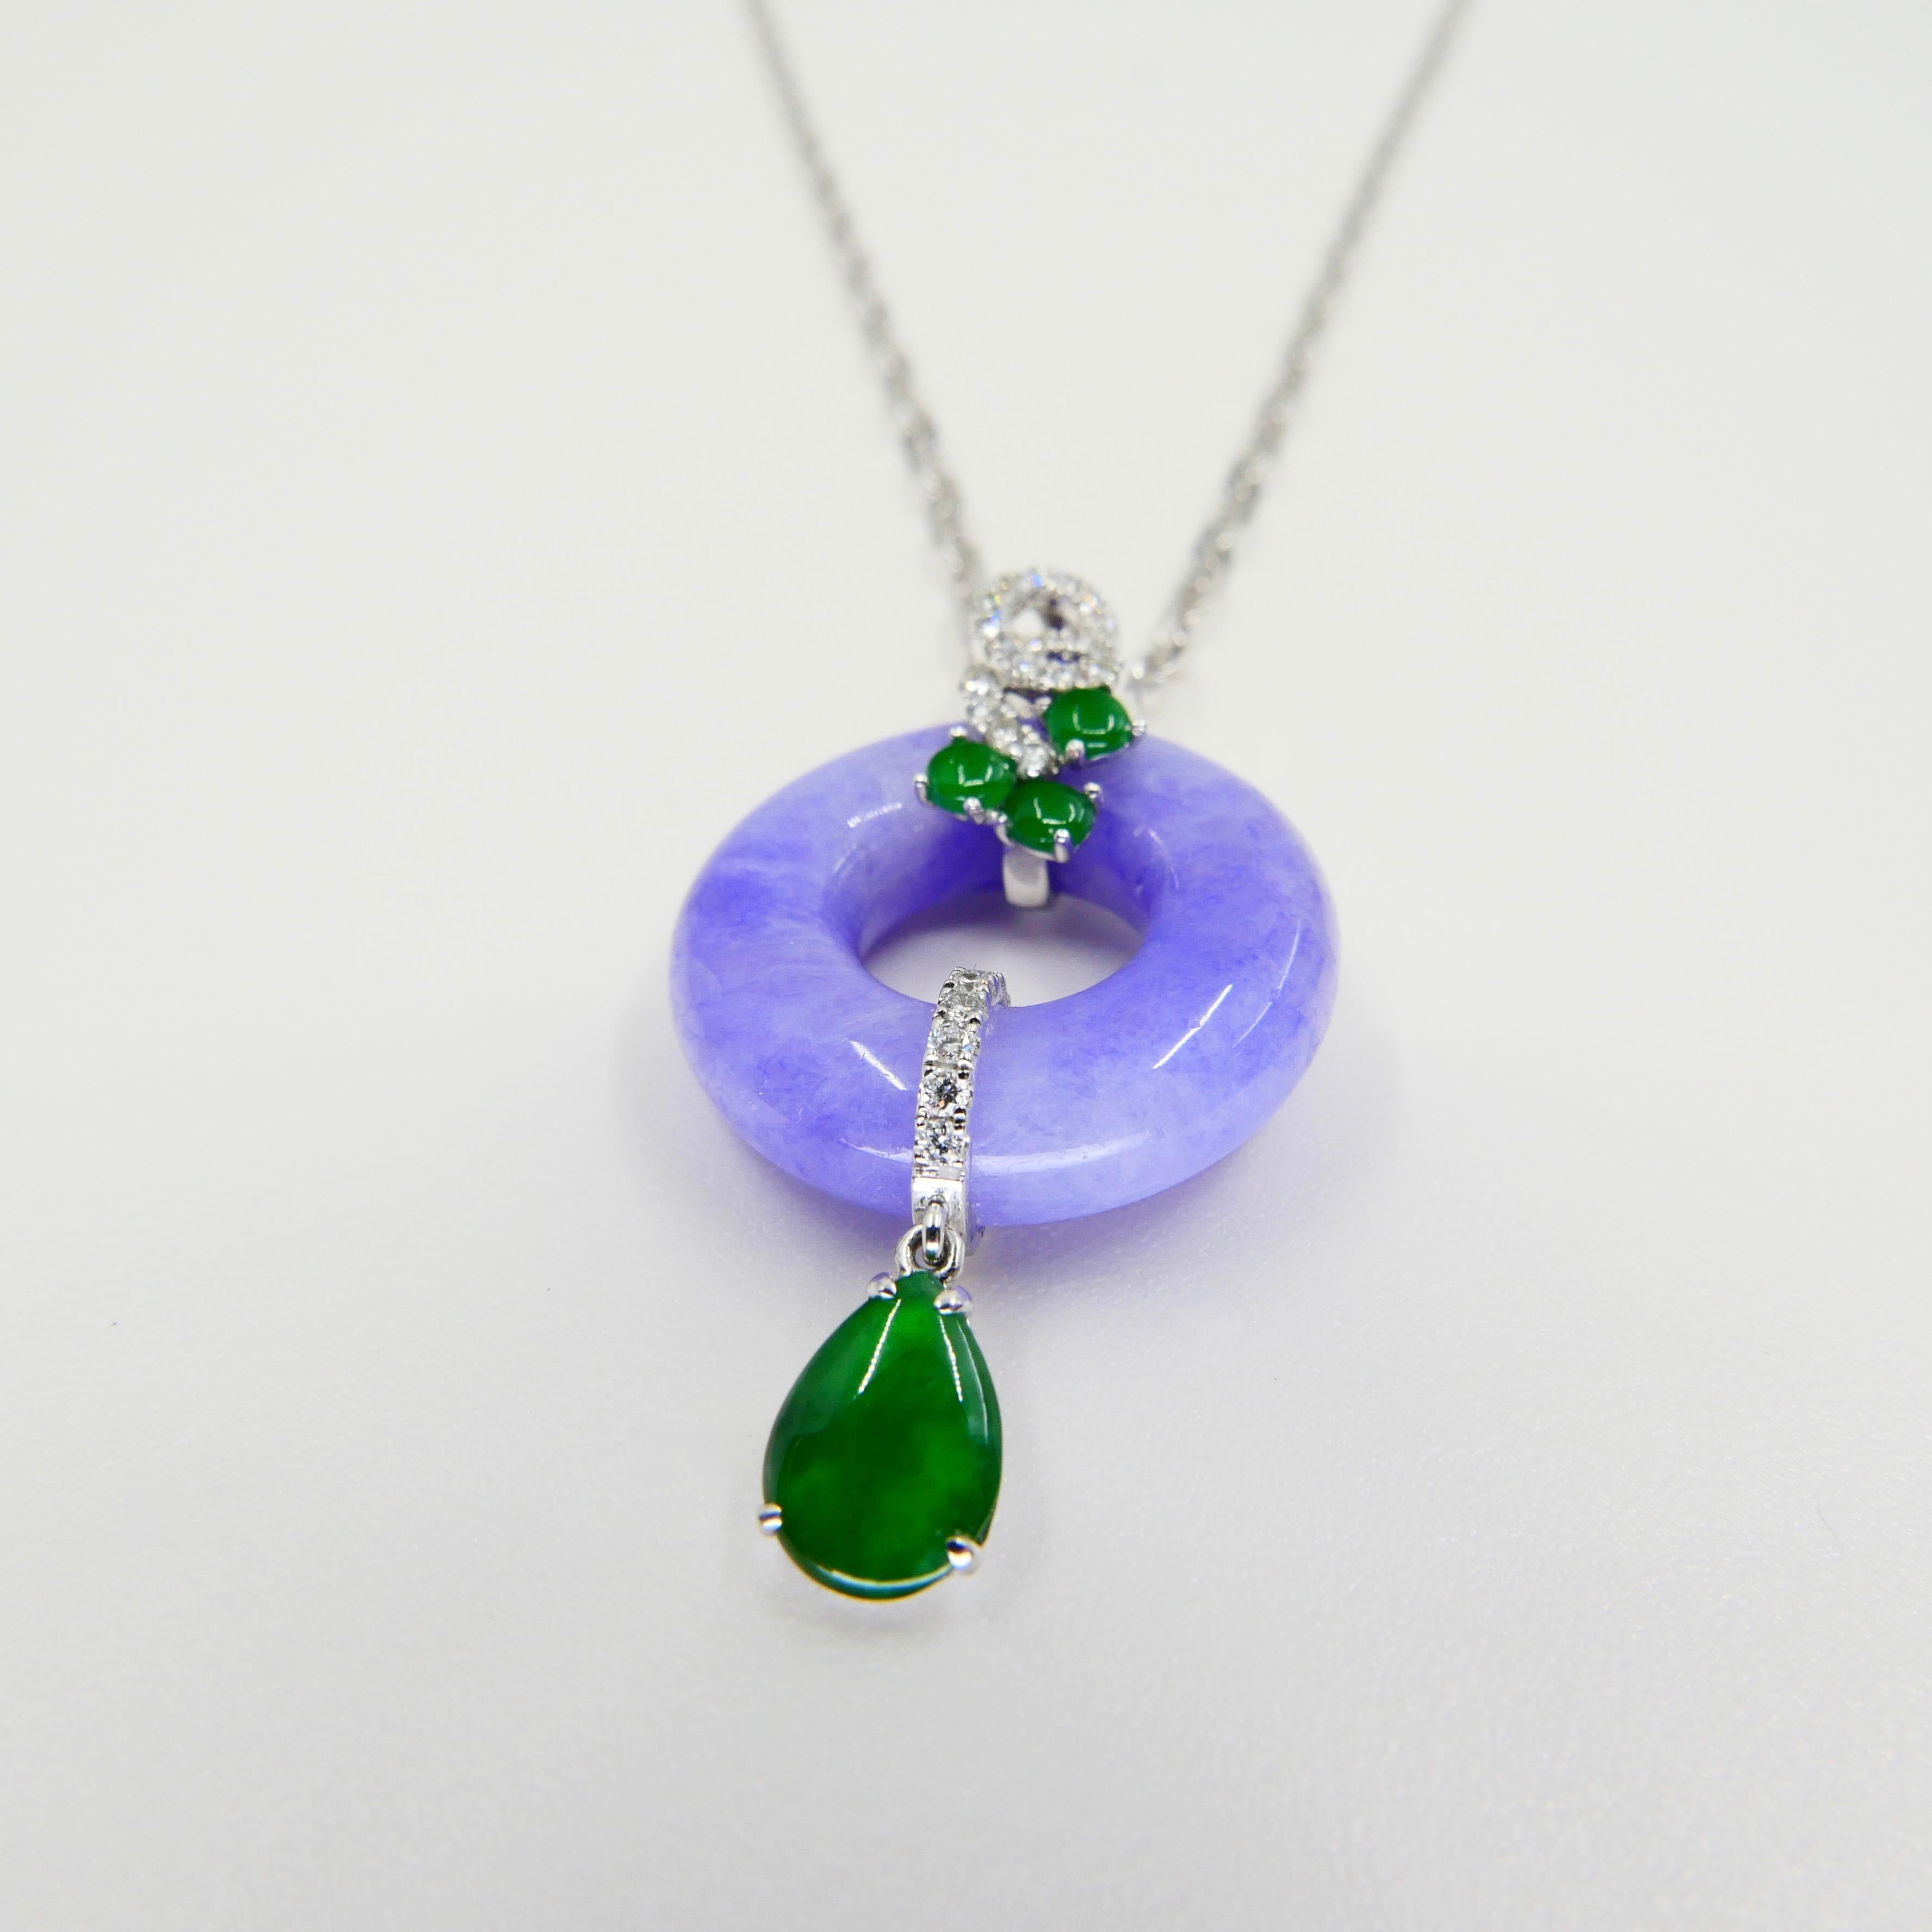 imperial jade pendant